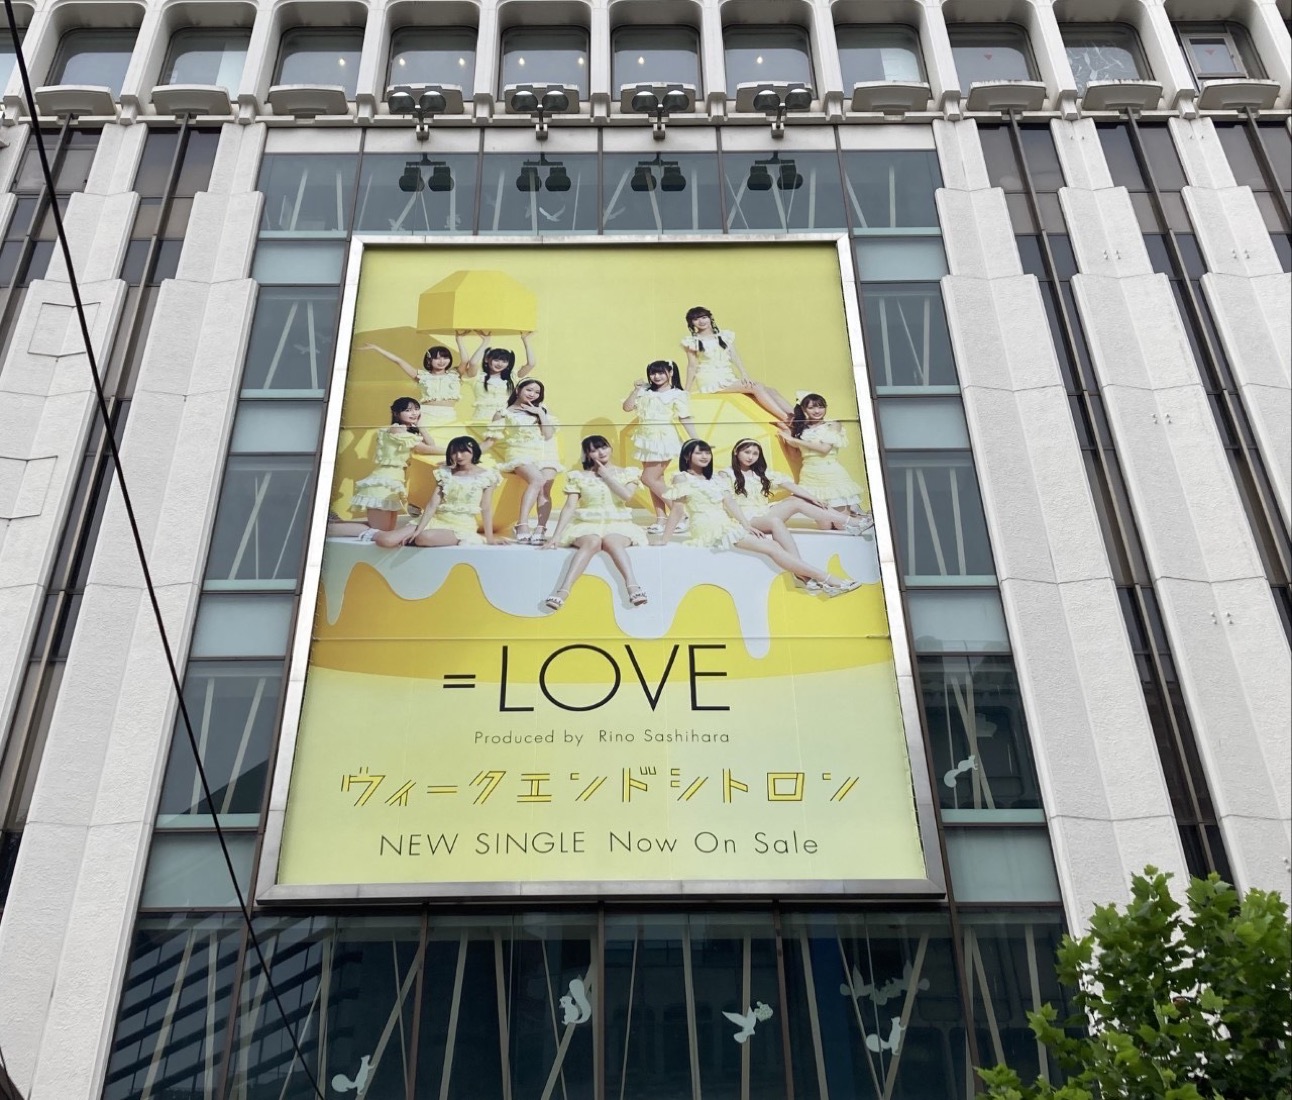 ＝LOVE、渋谷マルイ壁面に新曲「ウィークエンドシトロン」超巨大ポスター登場！